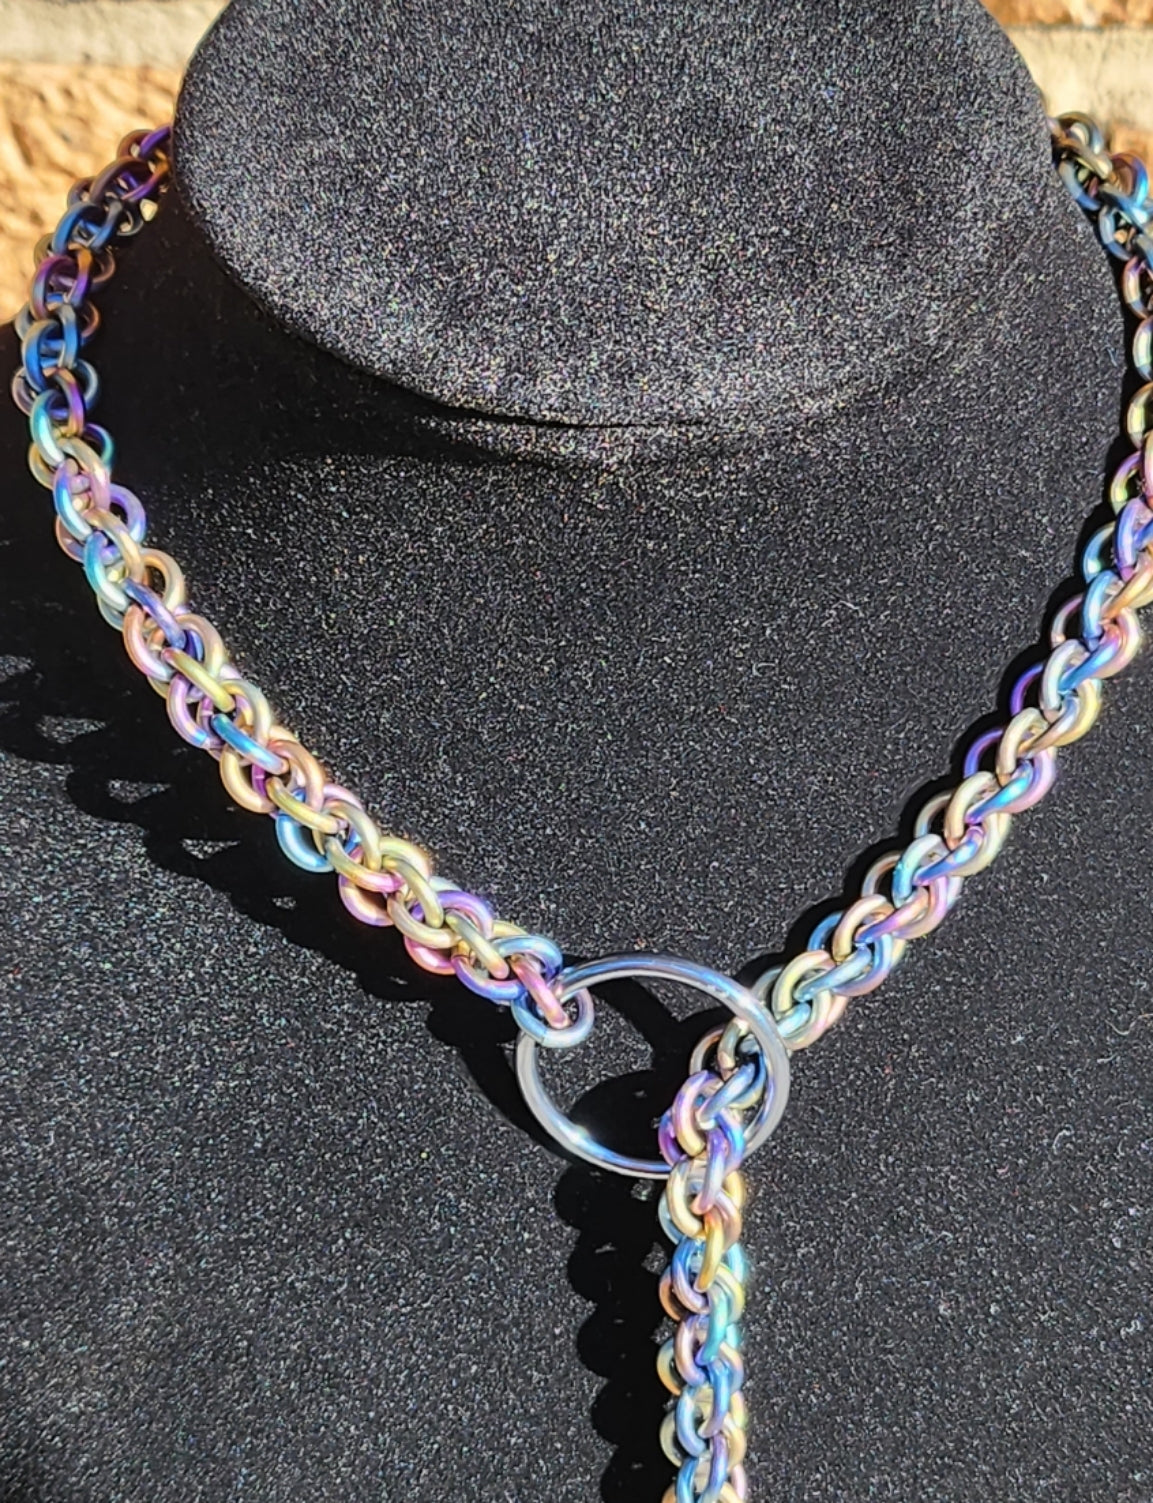 Rainbowed Titanium Lariat "Choke" Chain - Made to Order